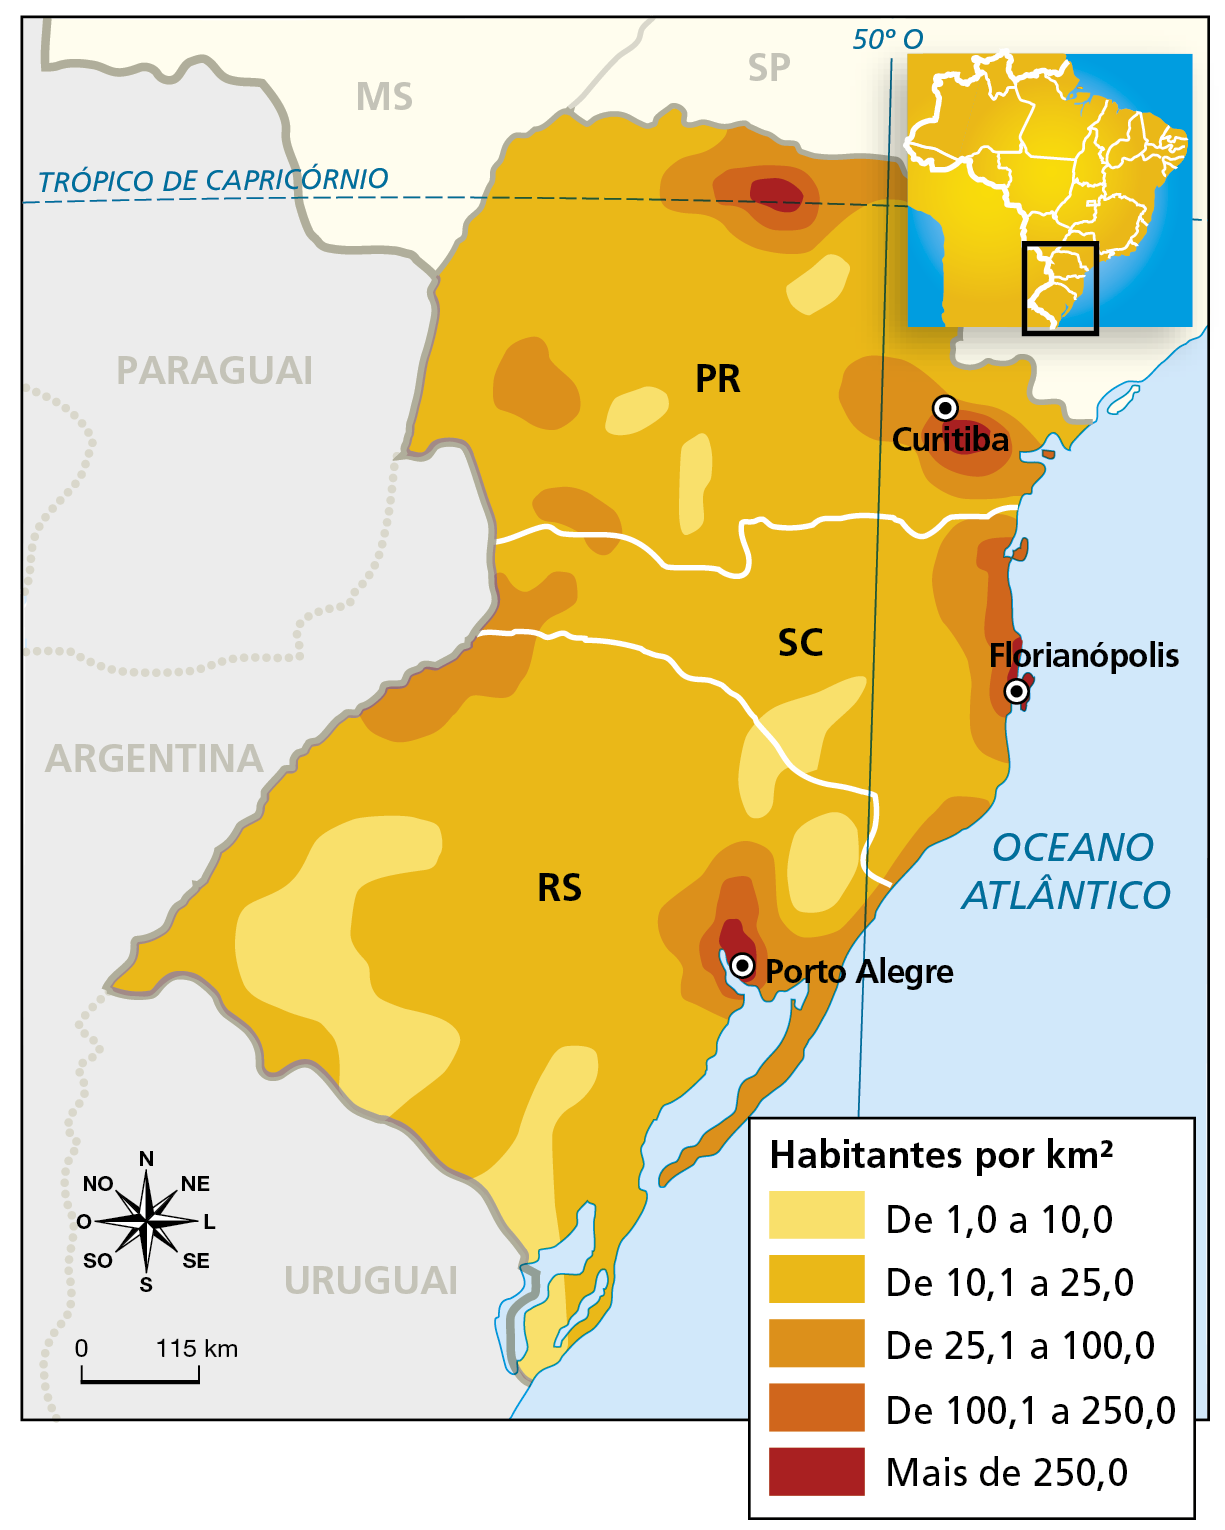 Mapa. Região Sul: densidade demográfica (2010). Mapa representando o território da região Sul do Brasil e a densidade demográfica em seus estados, em habitantes por quilômetro quadrado. De 1,0 a 10,0 habitantes por quilômetro quadrado, em amarelo: porções ao sul e nordeste do Rio Grande do Sul; pequena porção no sul de Santa Catarina; três pequenas porções no sul e norte do Paraná. De 10,1 a 25,0 habitantes por quilômetro quadrado, em laranja-claro: predominante no Rio Grande do Sul, Santa Catarina e Paraná. De 25,1 a 100,0 habitantes por quilômetro quadrado, em laranja: porção a noroeste e na costa leste do Rio Grande do Sul, porção a oeste e e perto da costa leste de Santa Catarina e porção ao norte e leste do Paraná. De 100,1 a 250,0 habitantes por quilômetro quadrado, em laranja-escuro: porção leste do Rio Grande do Sul, Santa Catarina e Paraná. Mais de 250,0 habitantes por quilômetro quadrado, em marrom: ao redor das capitais do Rio Grande do Sul, Santa Catarina e Paraná e pequena porção ao norte do Paraná. À esquerda, rosa dos ventos e escala de zero  a 115 quilômetros.